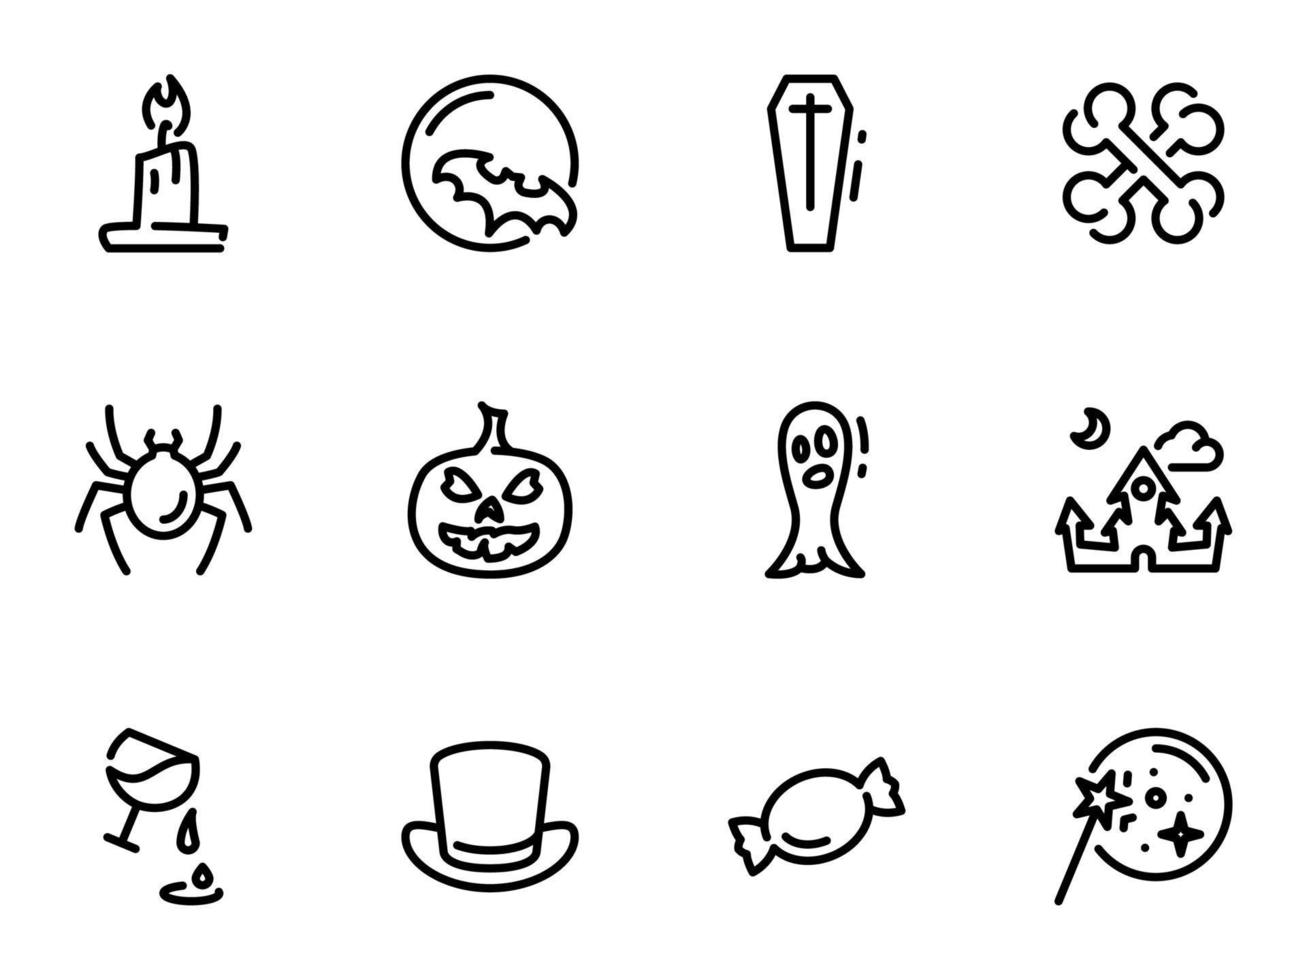 conjunto de ícones do vetor preto, isolados contra um fundo branco. ilustração em um tema de halloween